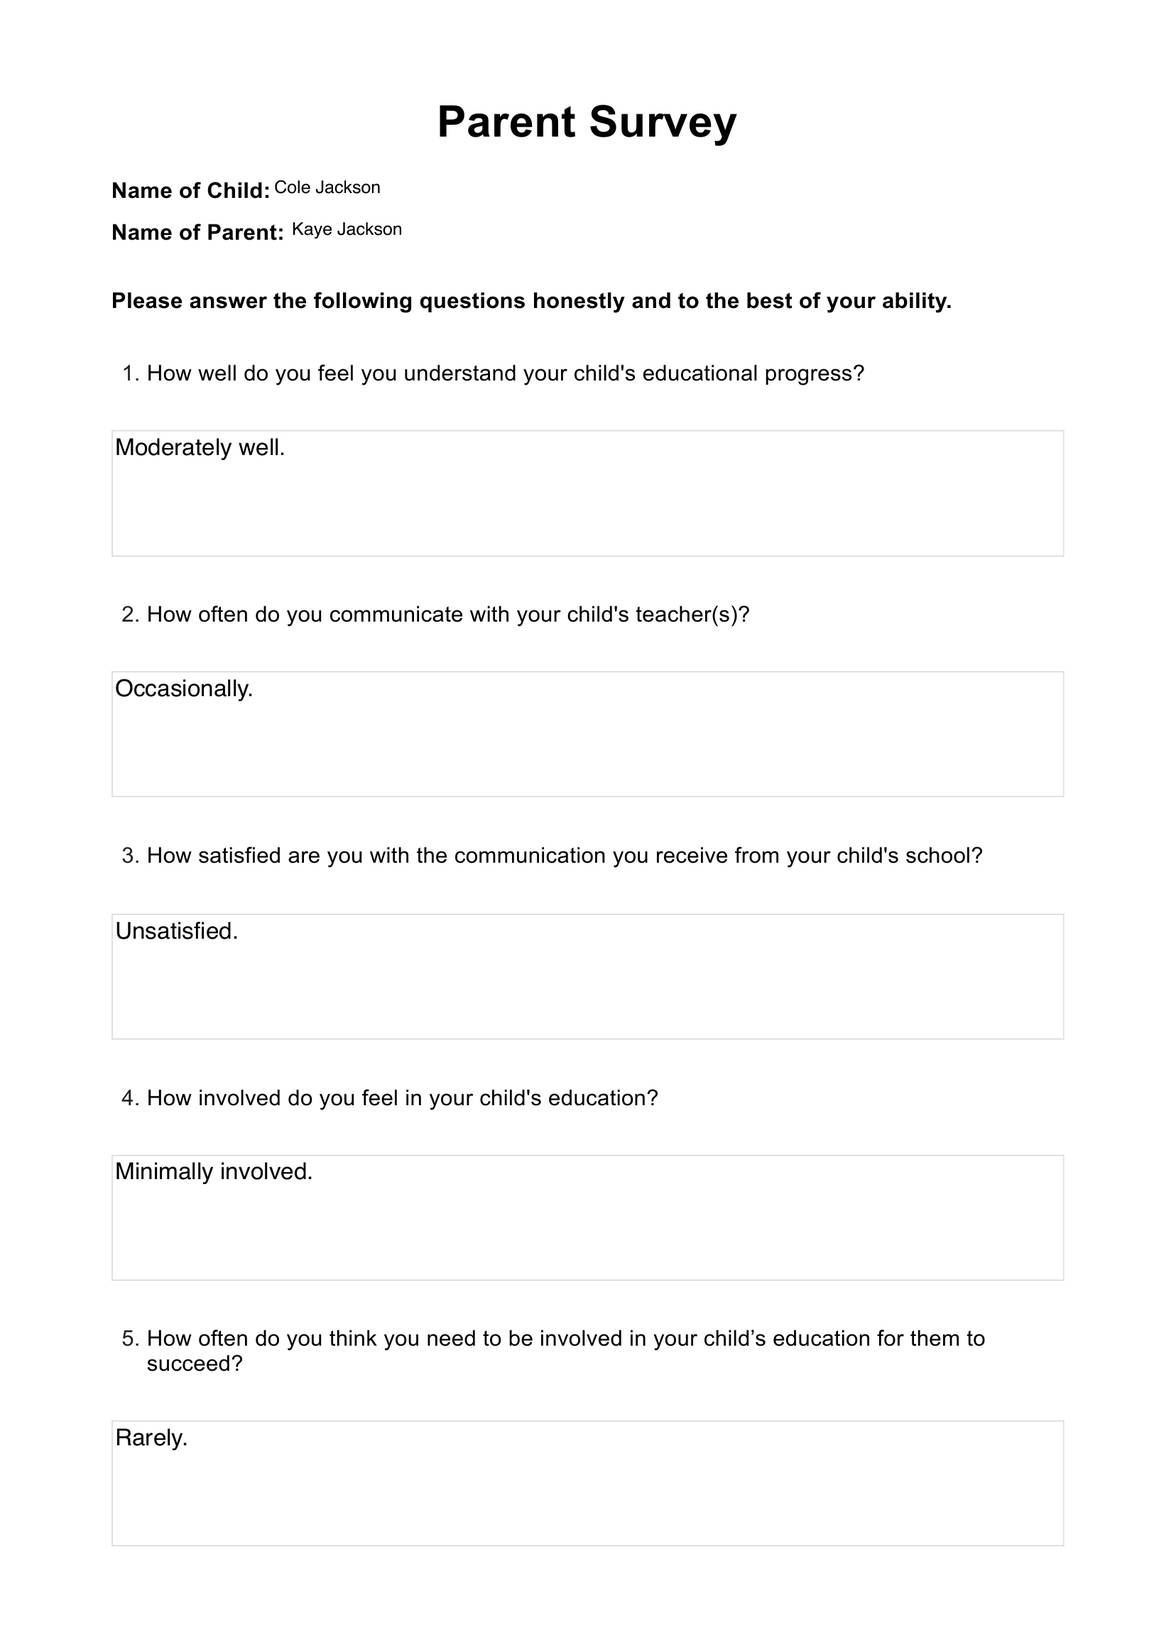 Parent Survey PDF Example